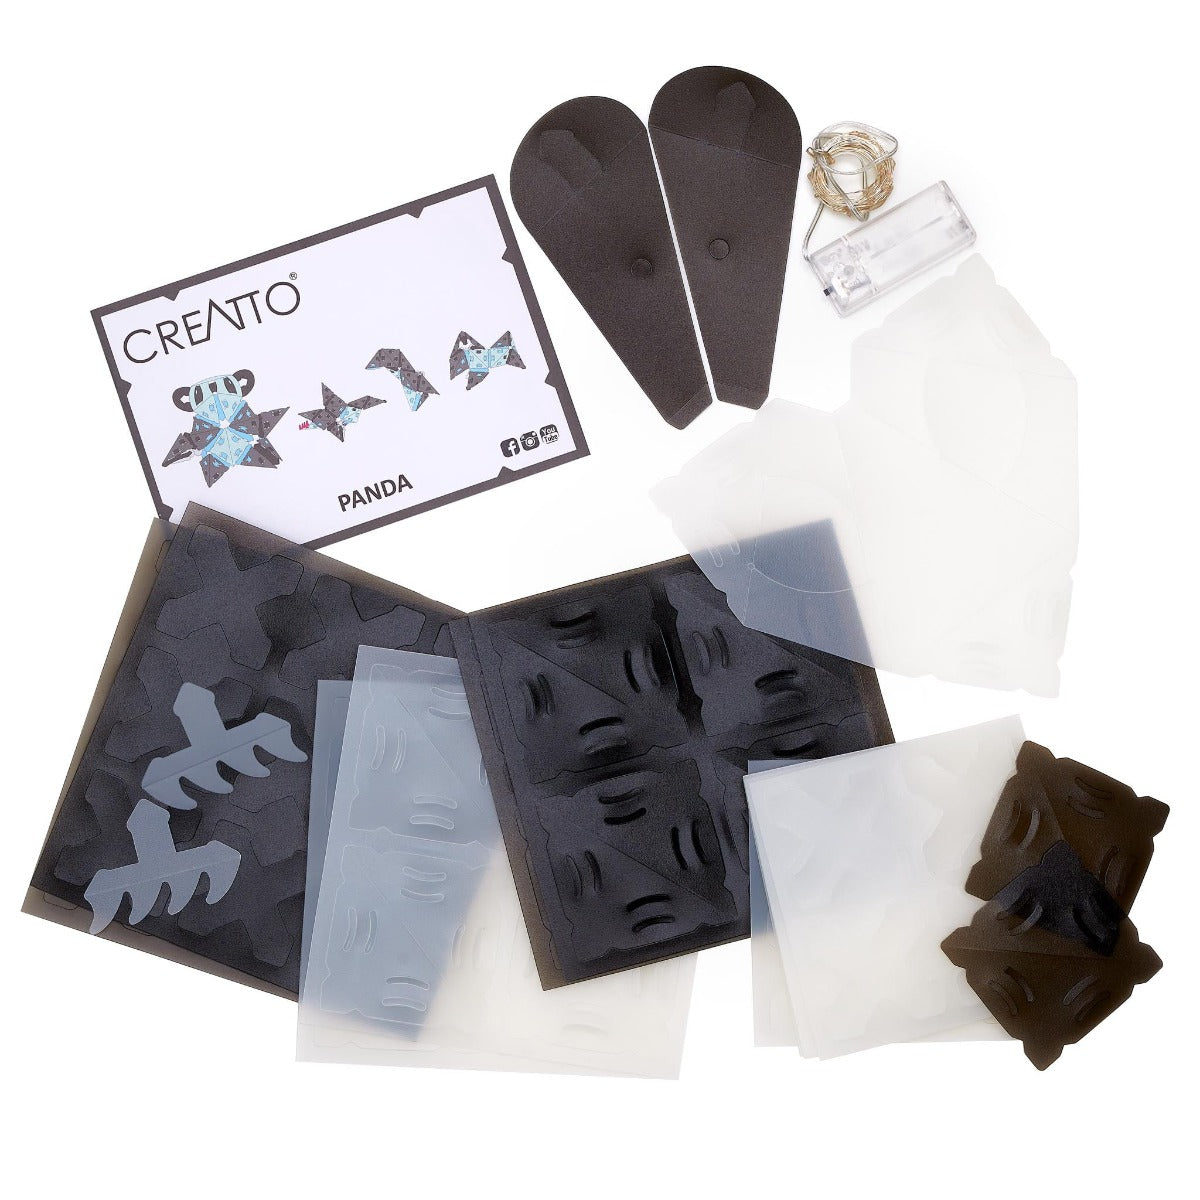 Creatto - Panda LED Animal Craft Kit